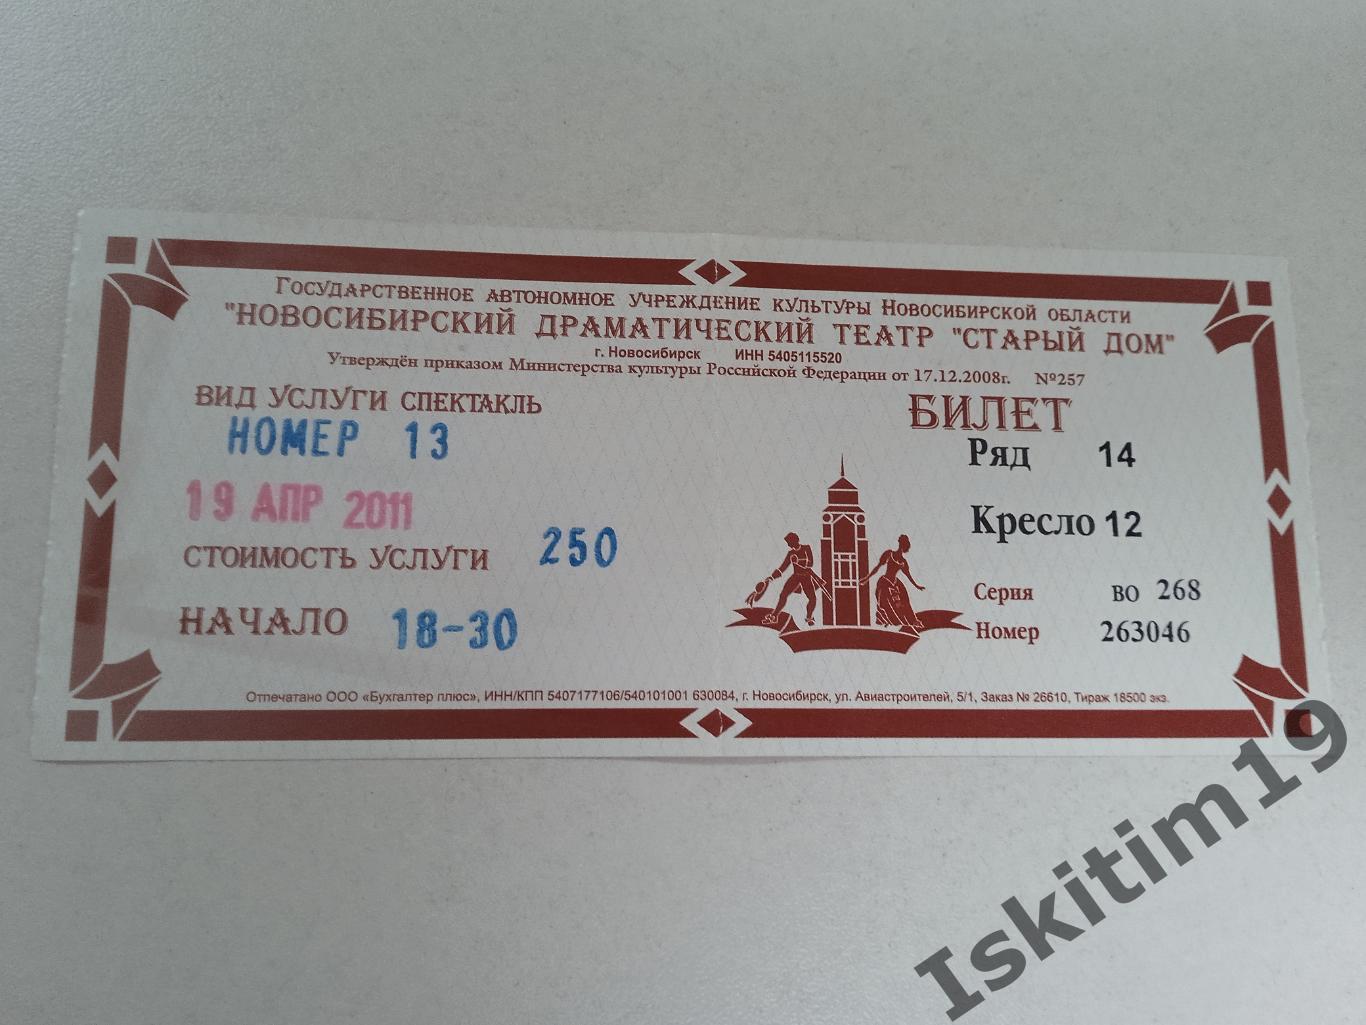 Билет в Новосибирский драматический театр Старый дом 19.04.2011